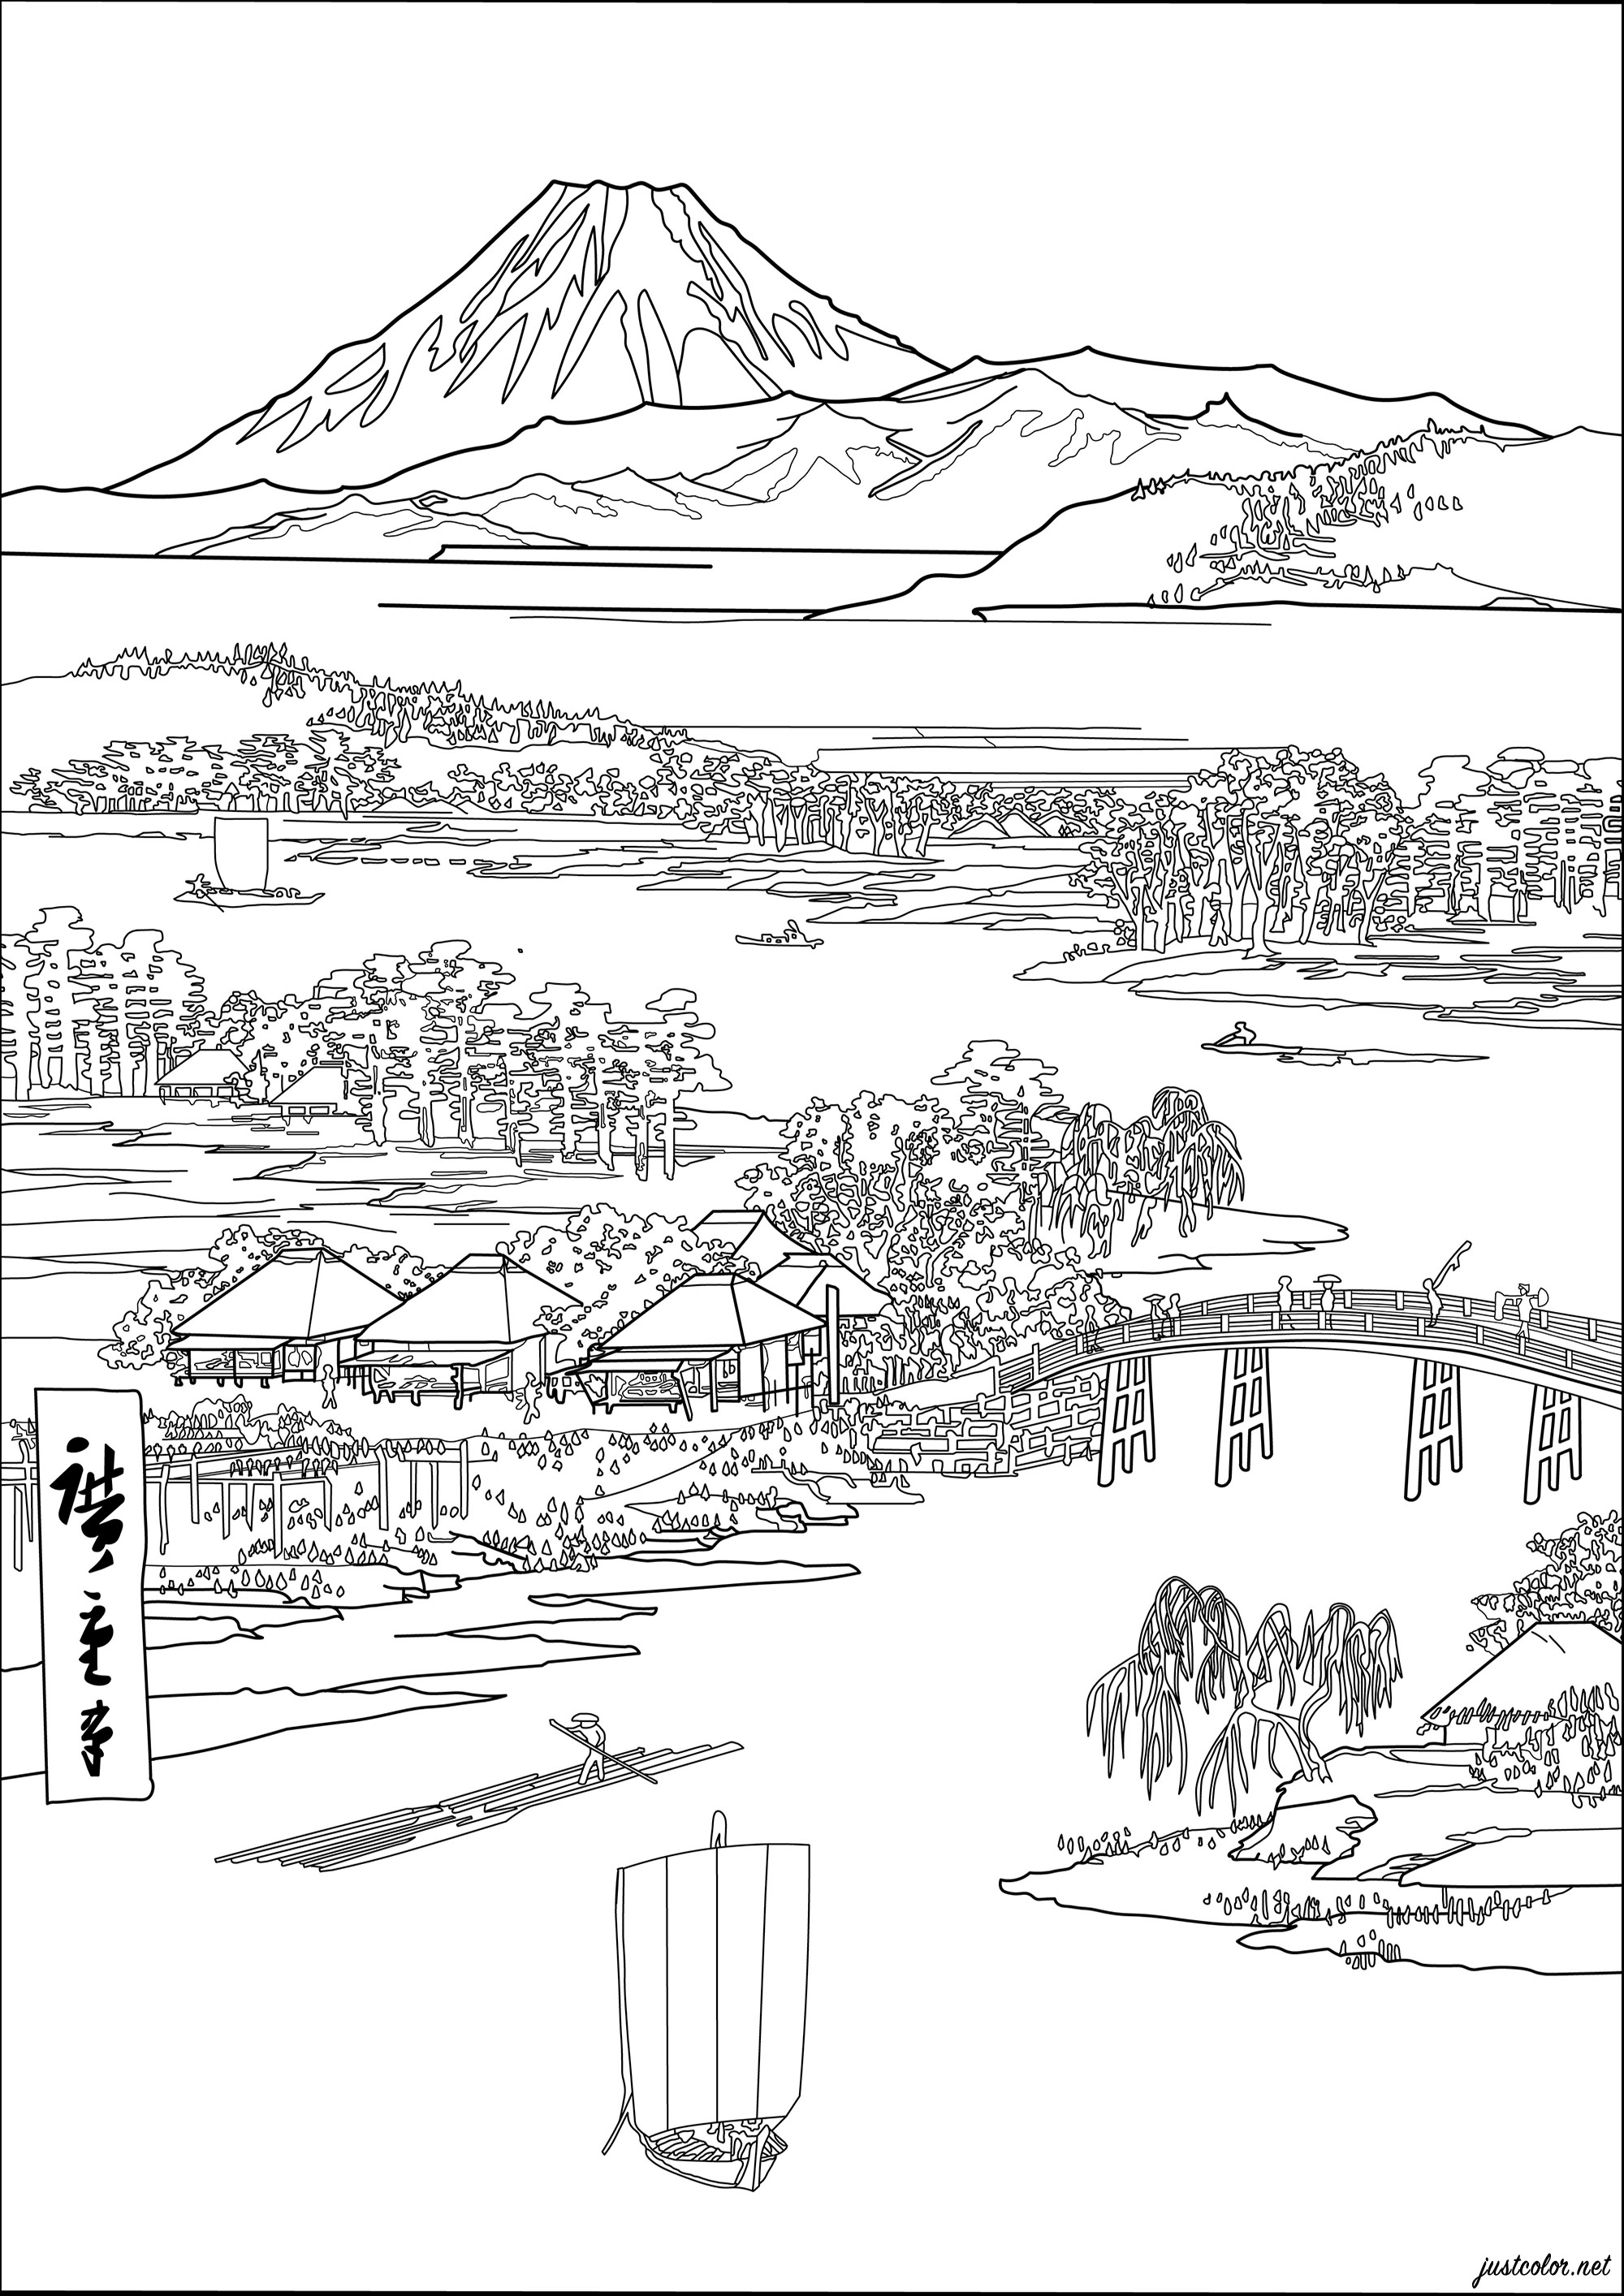 Colorazione basata su una stampa giapponese di Utagawa Hiroshige (1833). Questa japonaise raffigura una classica scena giapponese, con case in stile tradizionale e montagne sullo sfondo.I colori originali sono tenui e pastello, con sfumature di blu, verde e rosa, Artista : Morgan